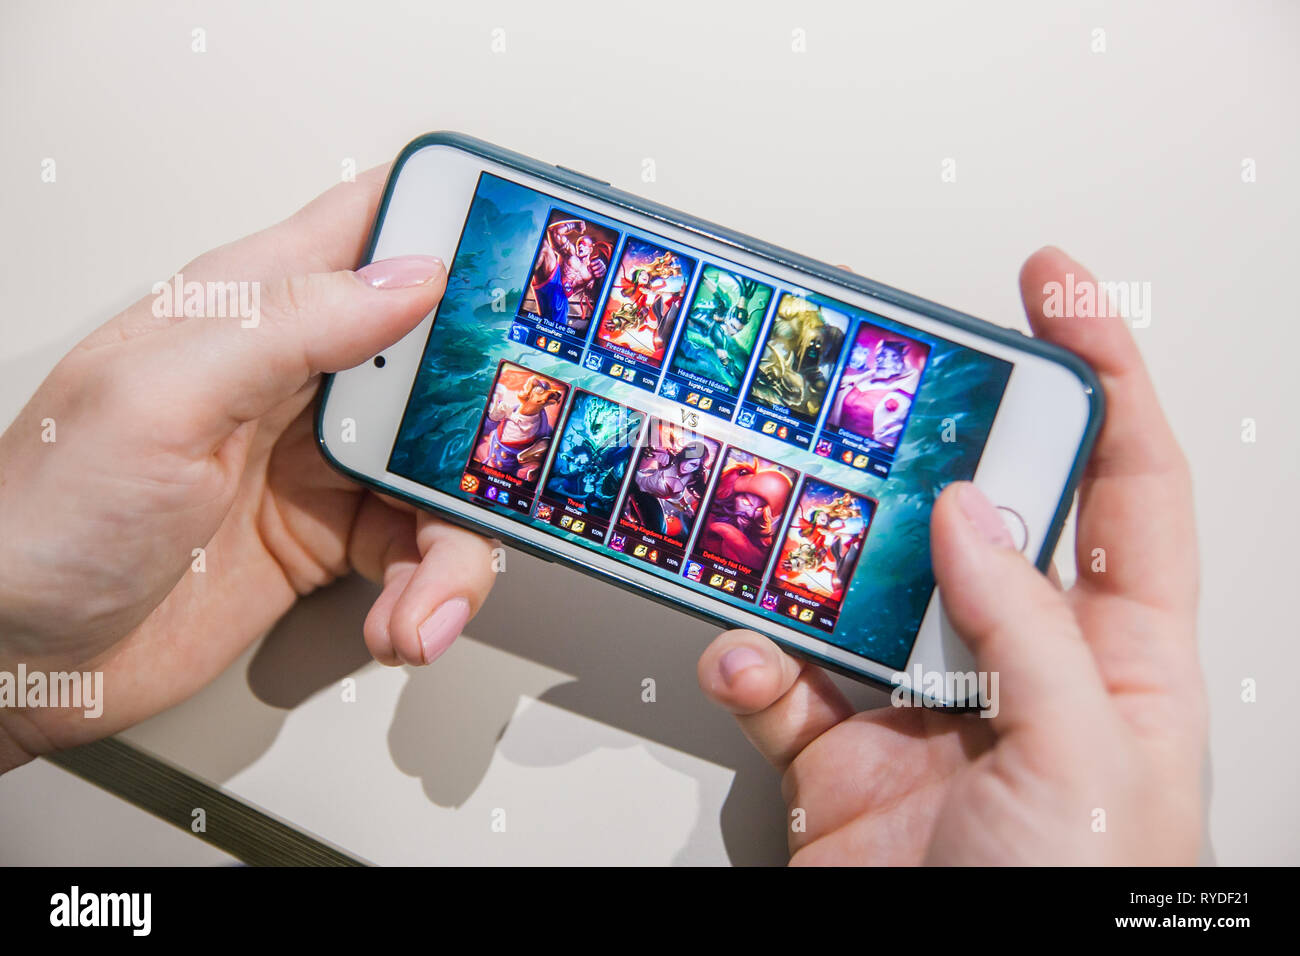 Los Angeles, California, Stati Uniti d'America - 25 Febbraio 2019: mani di uno smartphone con la Lega delle leggende gioco sullo schermo, Editoriale illustrativa Foto Stock